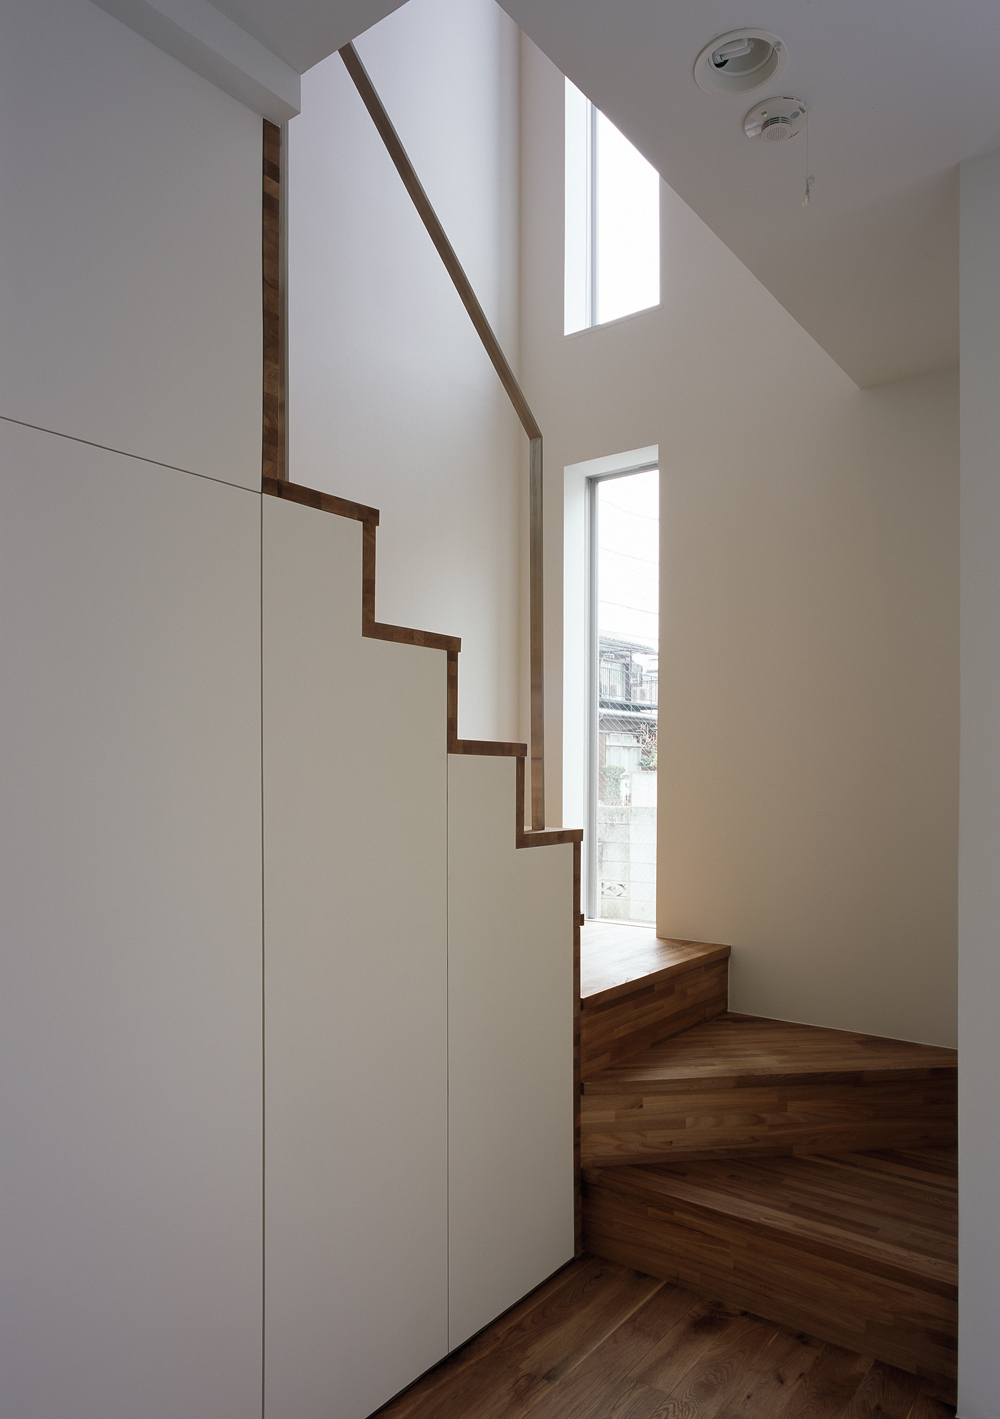 シンプルな佇まいの階段に優しさを与える、2つの縦スリット窓